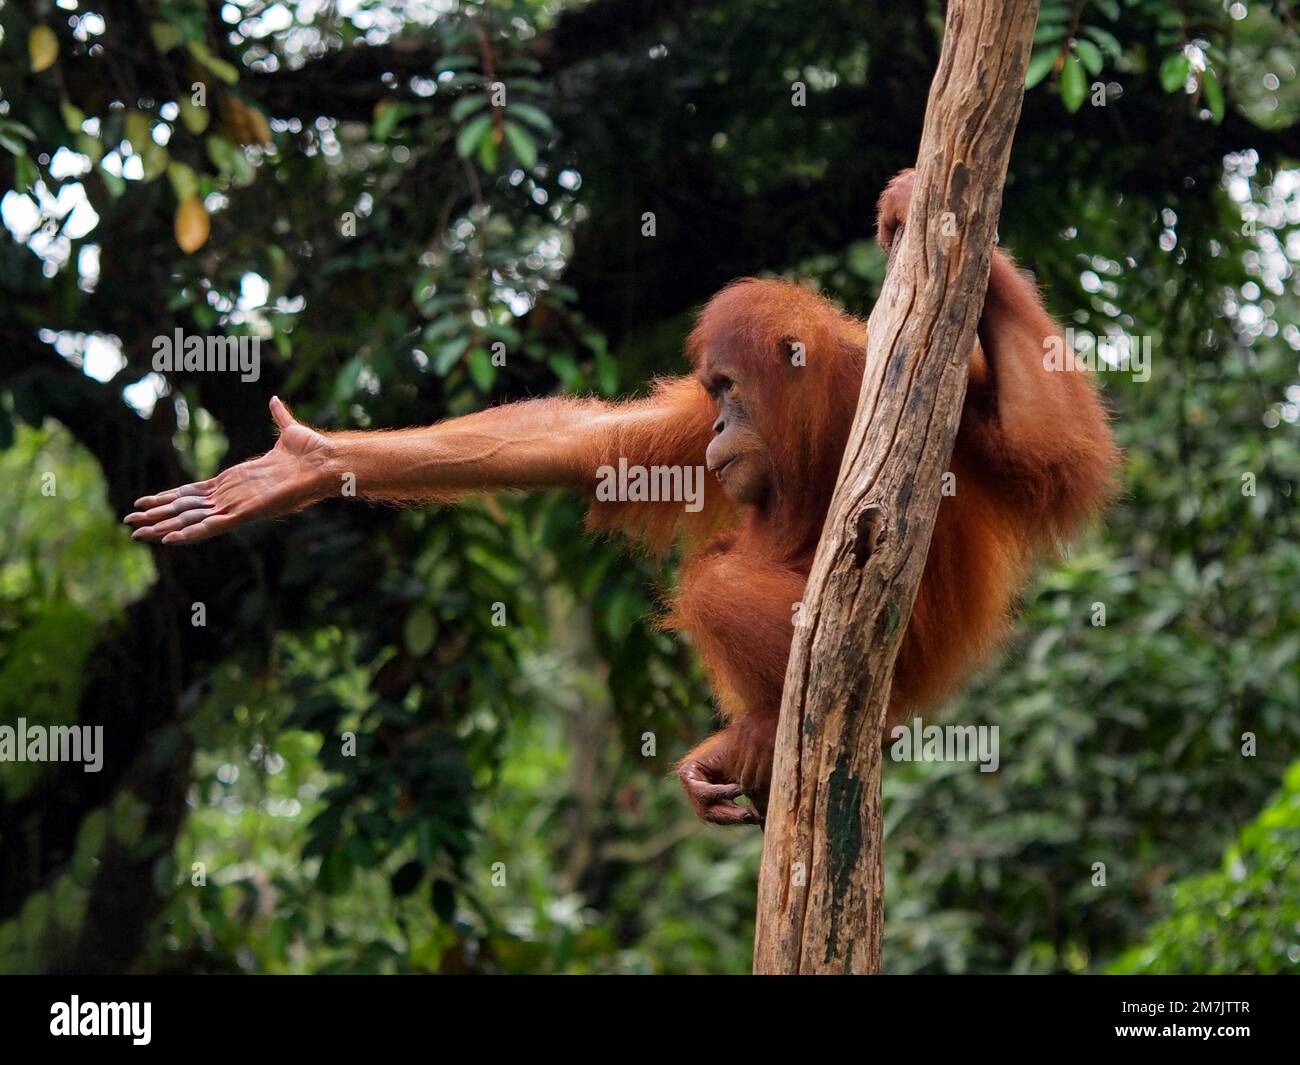 DIESER ORANG-UTAN wurde gefangen genommen, als er im Animal Park in Jakarta, Indonesien, seine anmutigen Tanzbewegungen vorführte. Stockfoto